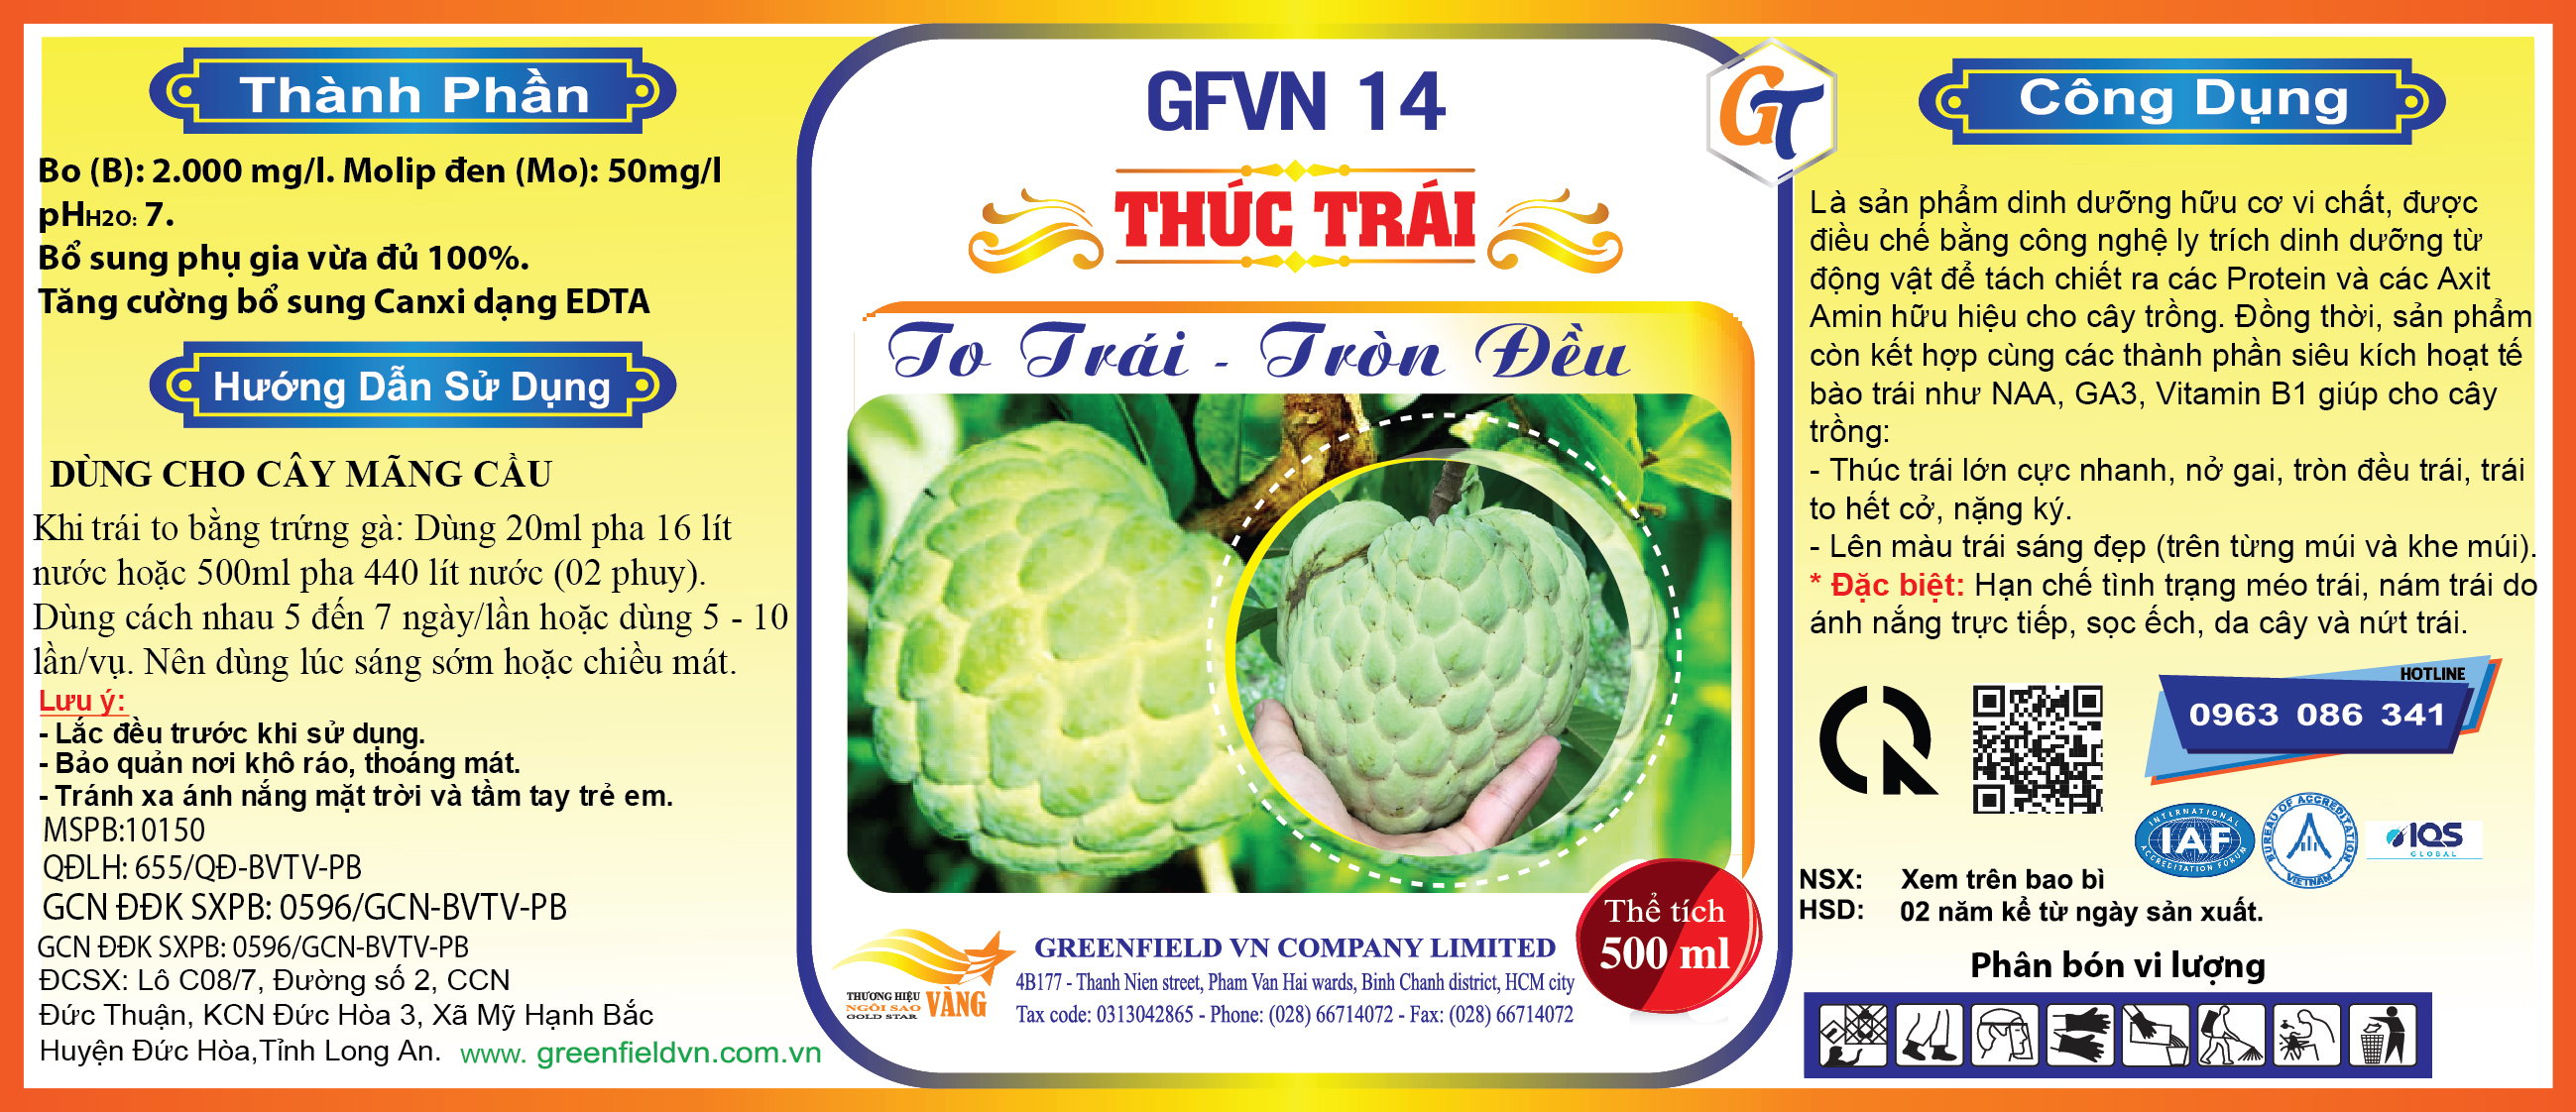 GT 14 - THÚC TRÁI MÃNG CẦU - GFVN 14